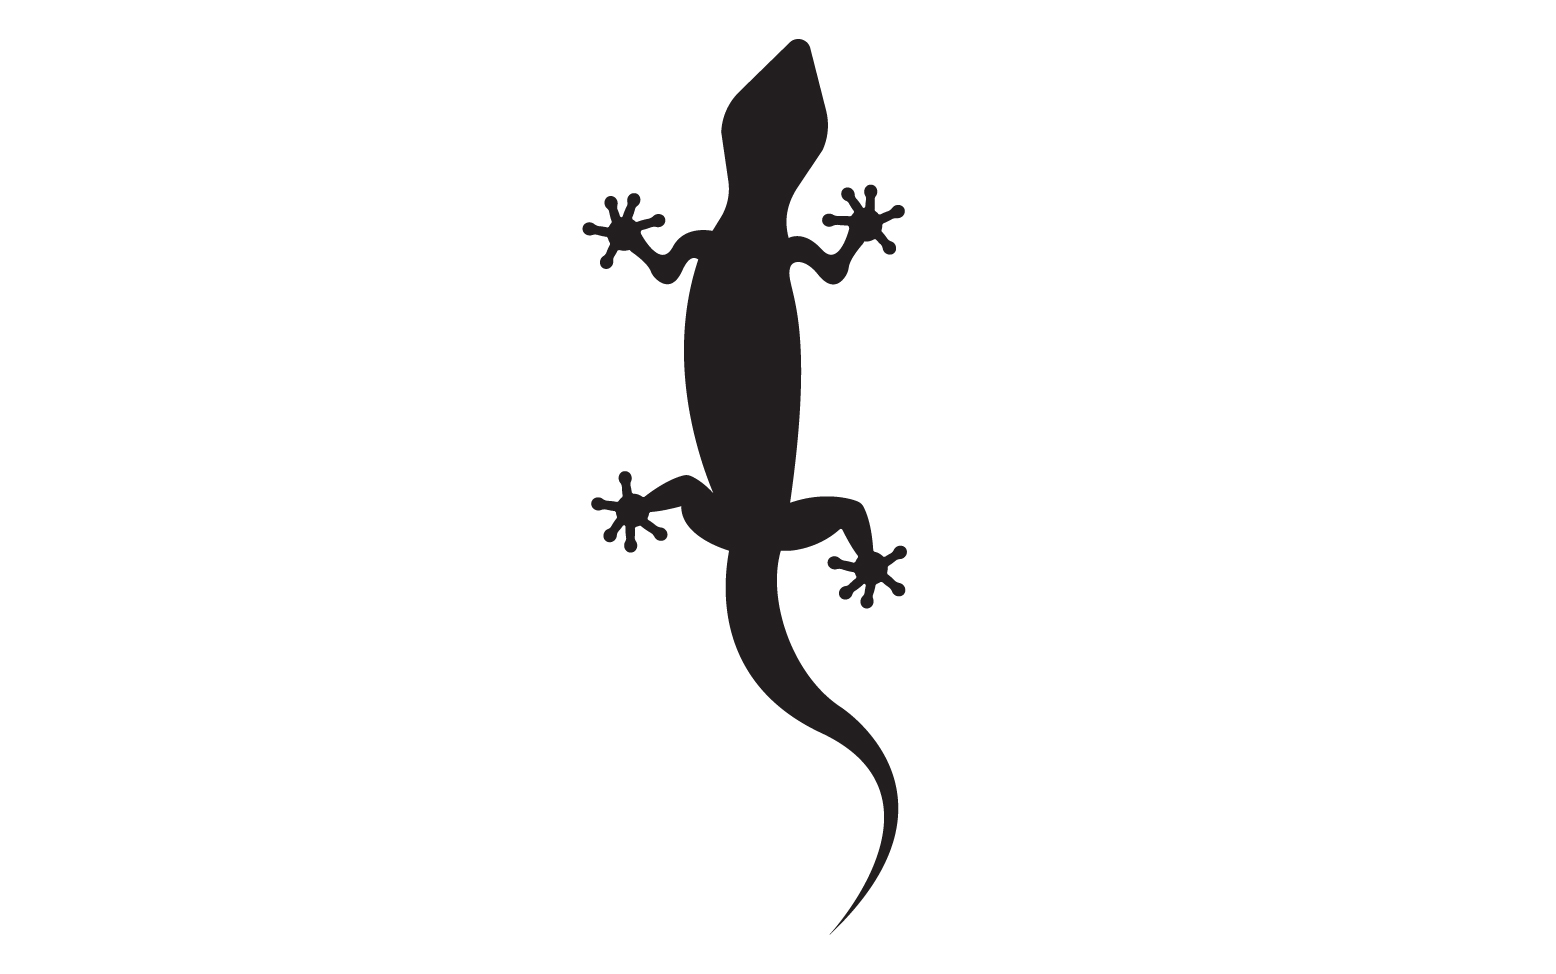 Lizard chameleon home lizard logo v52